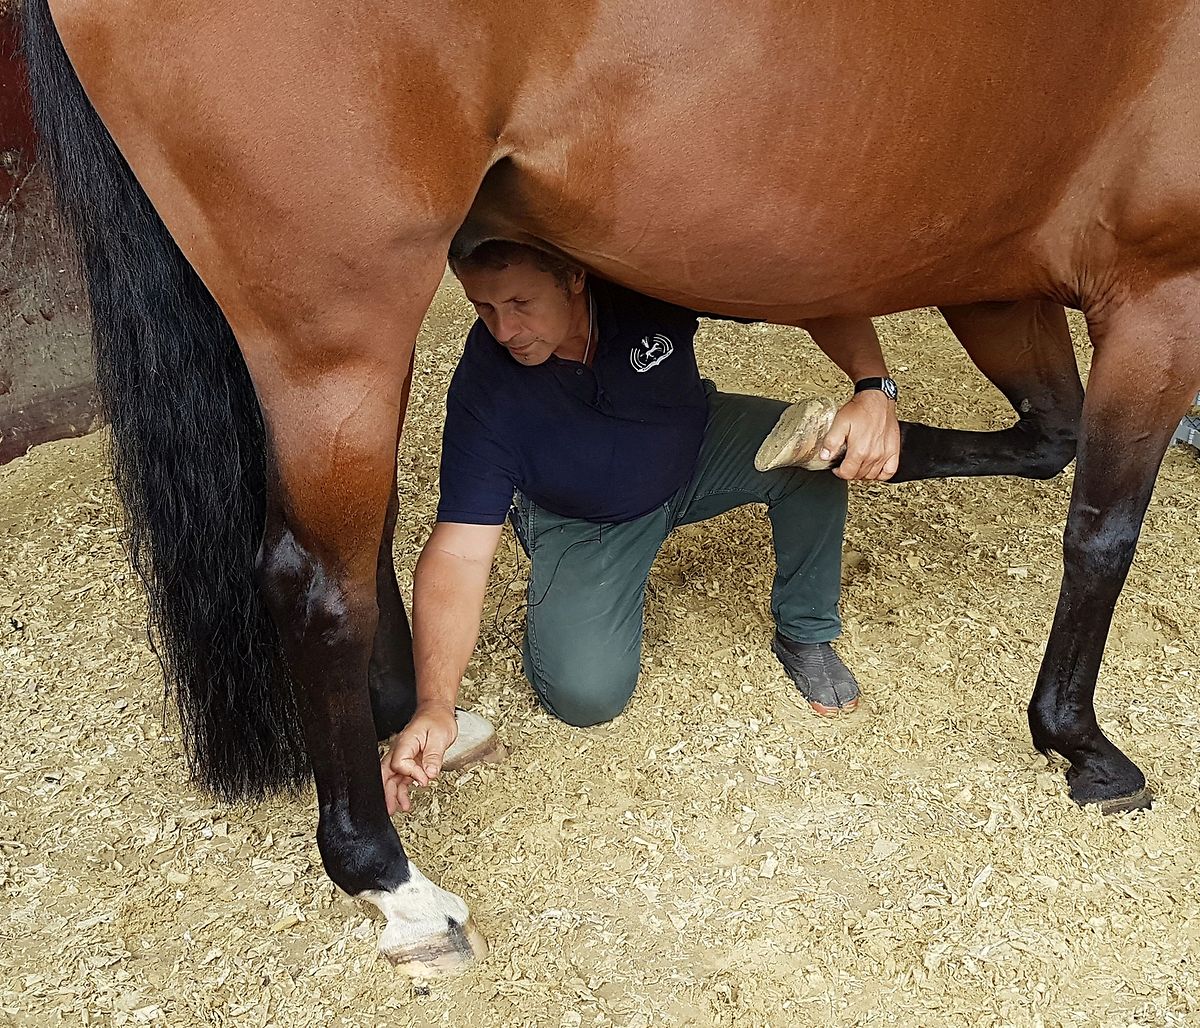 L'exercice de l'ostéopathie équine exige beaucoup d'expérience et une confiance mutuelle entre le médecin et le cheval.